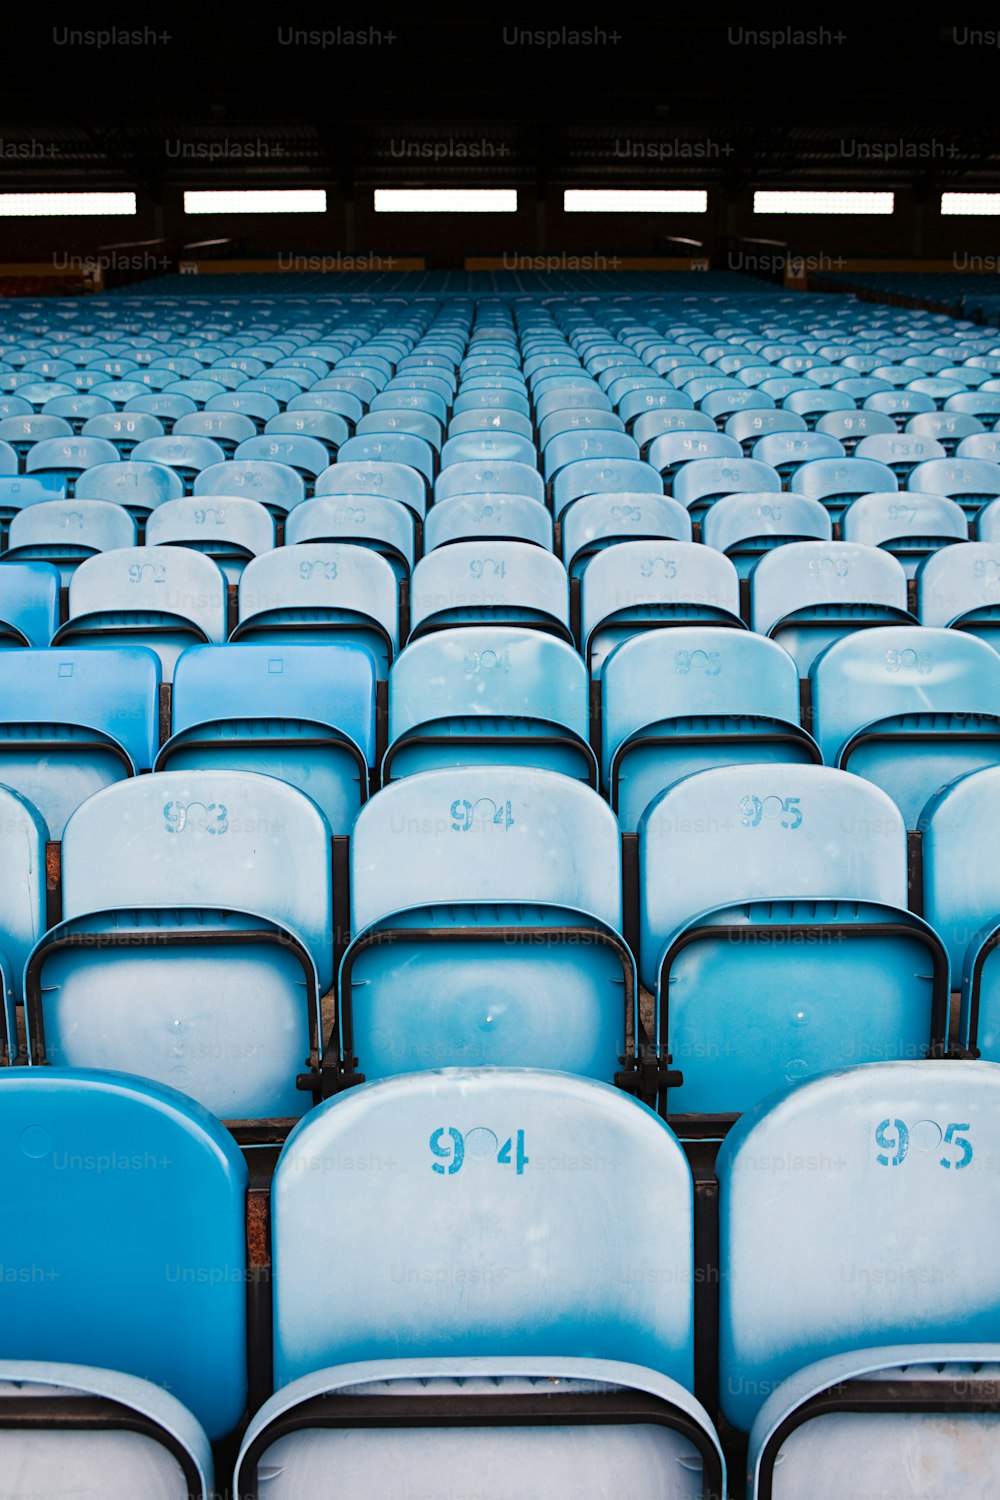 경기장에 파란색과 흰색 좌석이 줄지어 있습니다